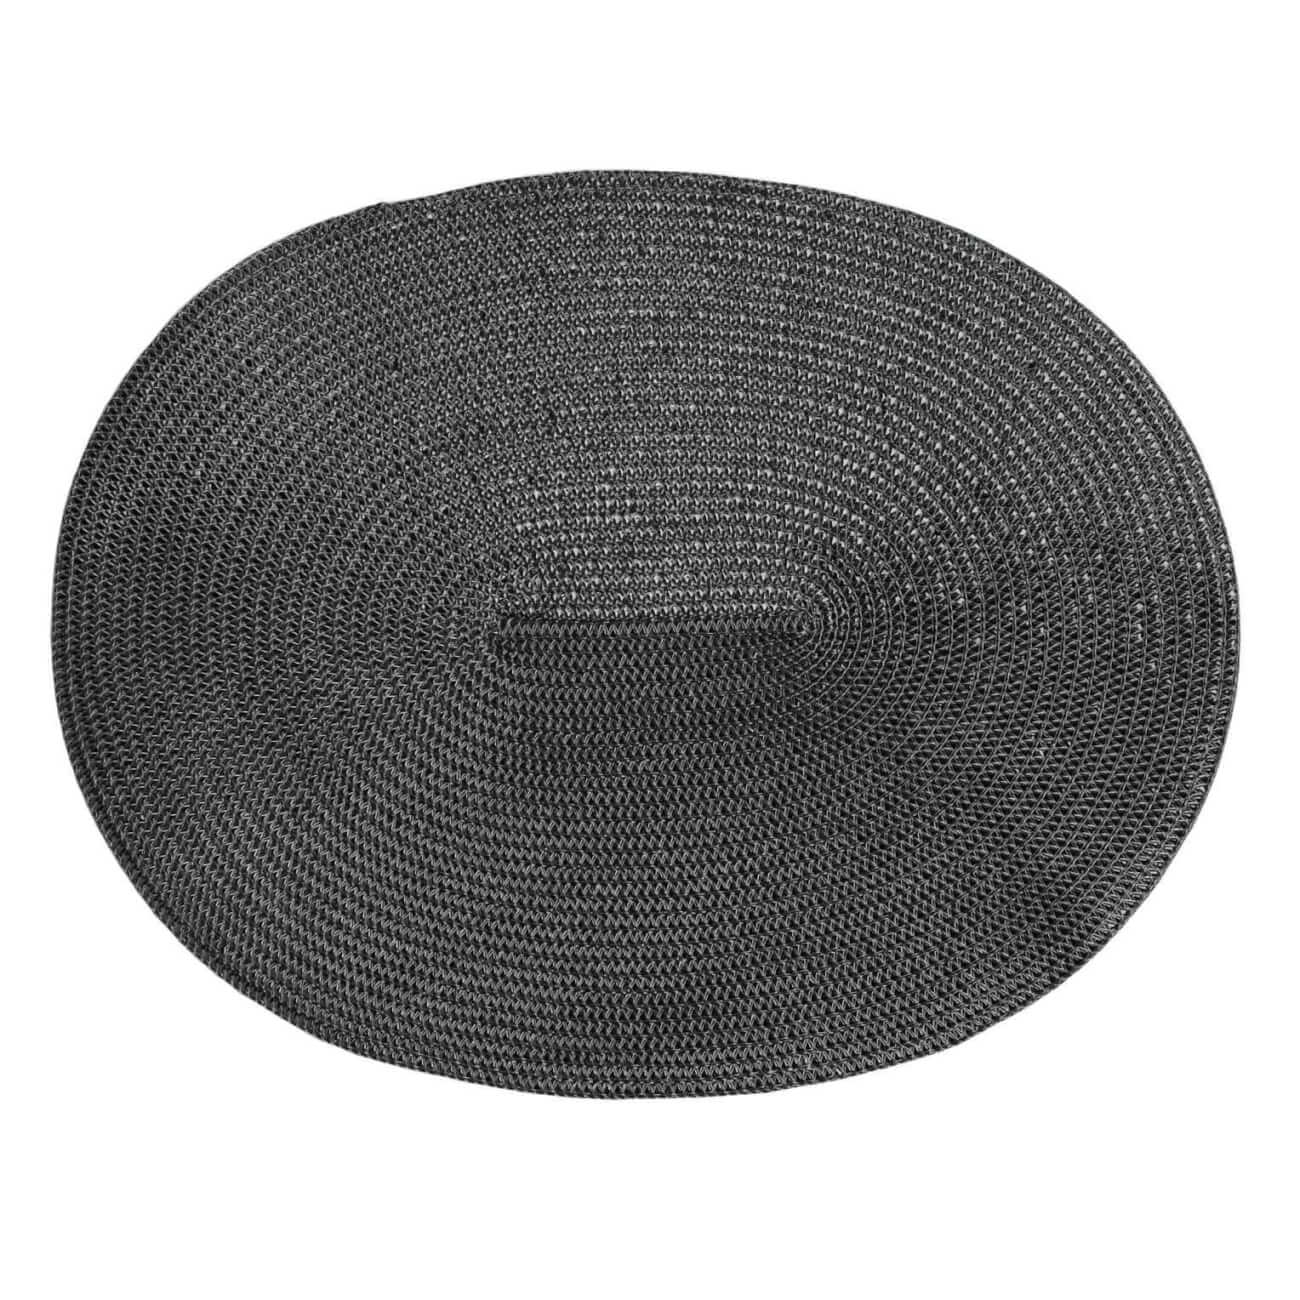 Салфетка под приборы, 30х45 см, полиэстер, овальная, черная, Circle shine изображение № 1